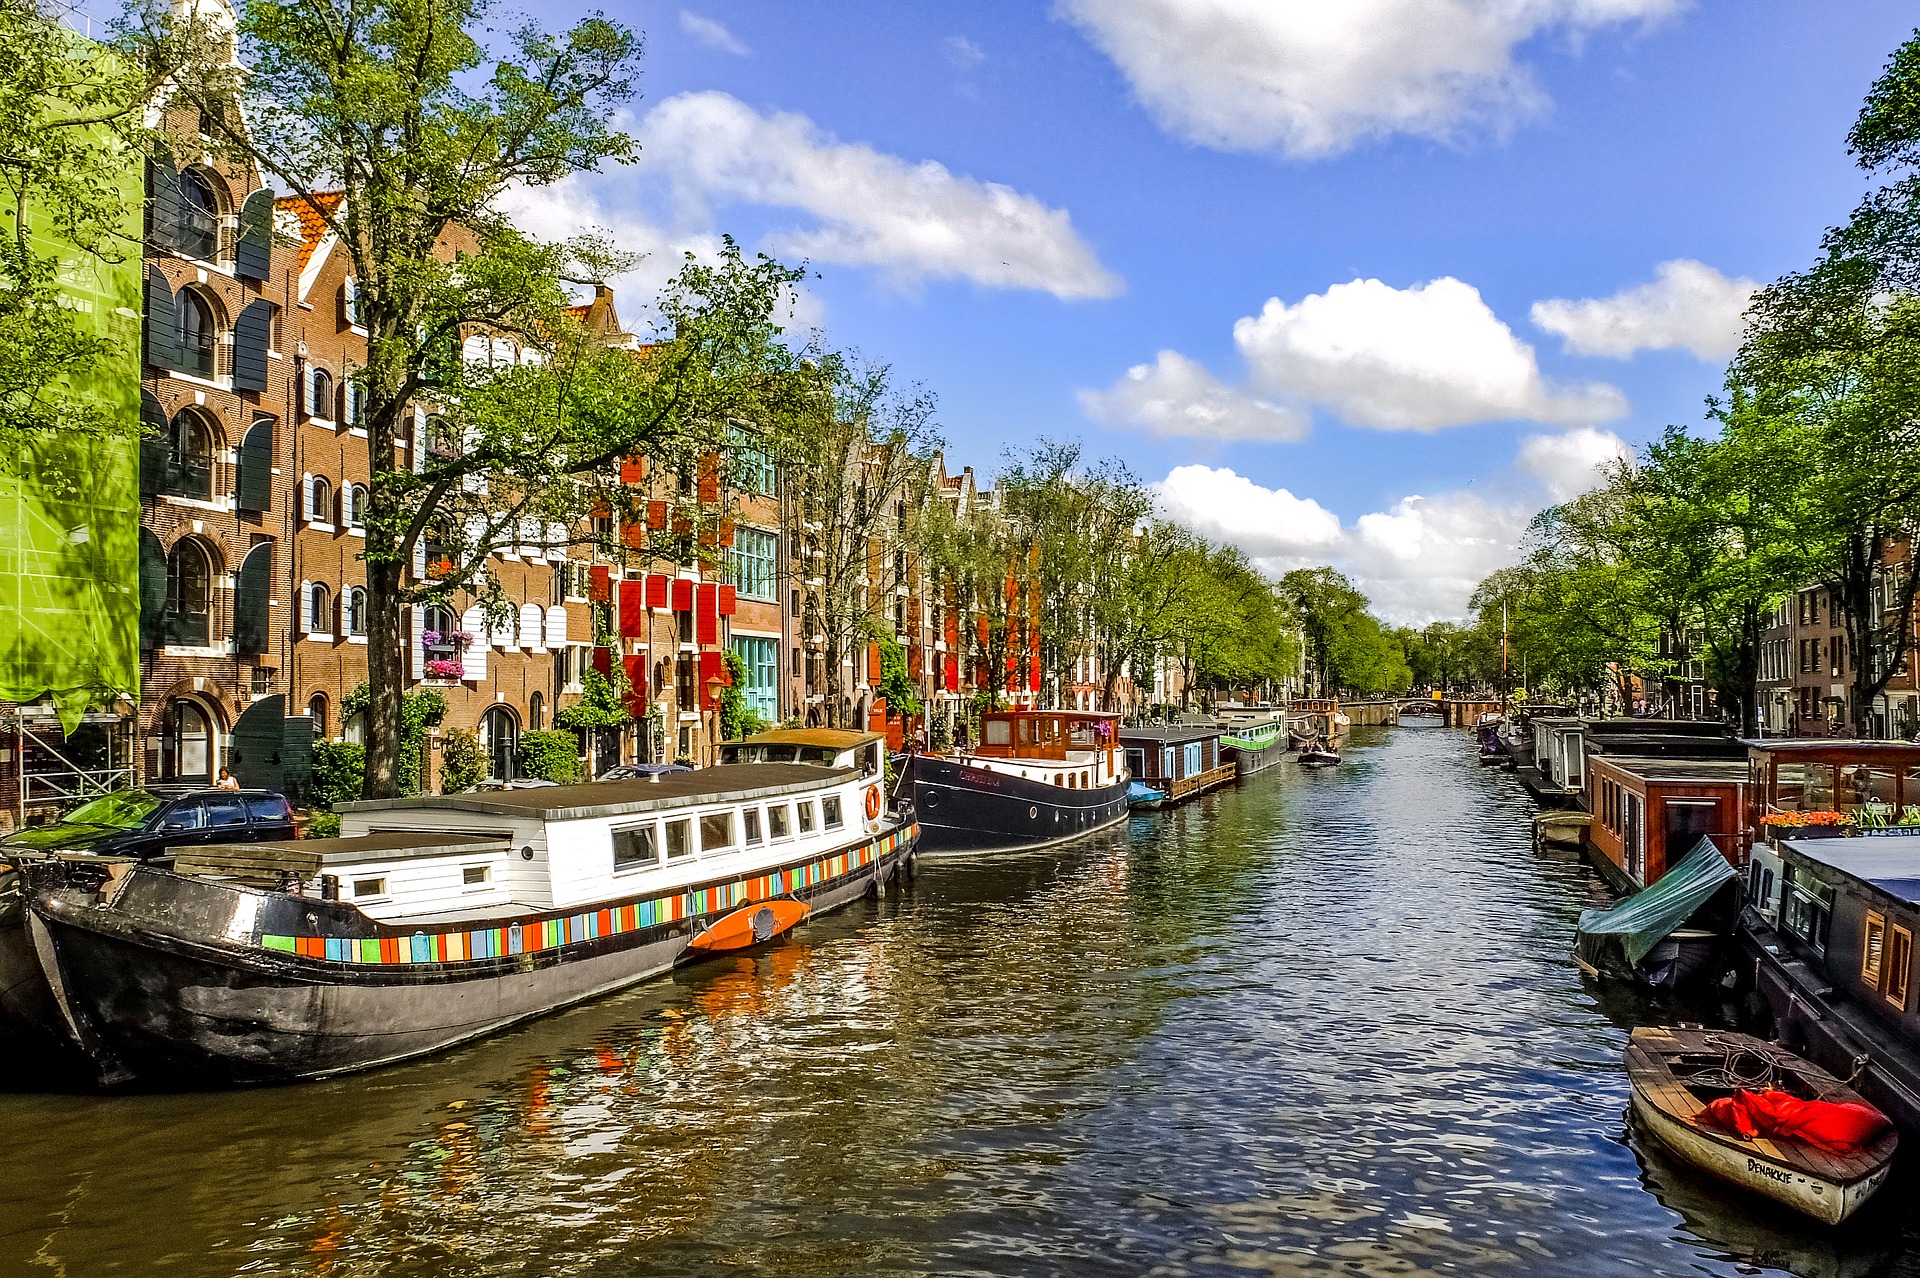 Busreise Amsterdam Grachtenfahrt Kanal kleine Schiffe bunte Häuser grüne Bäume